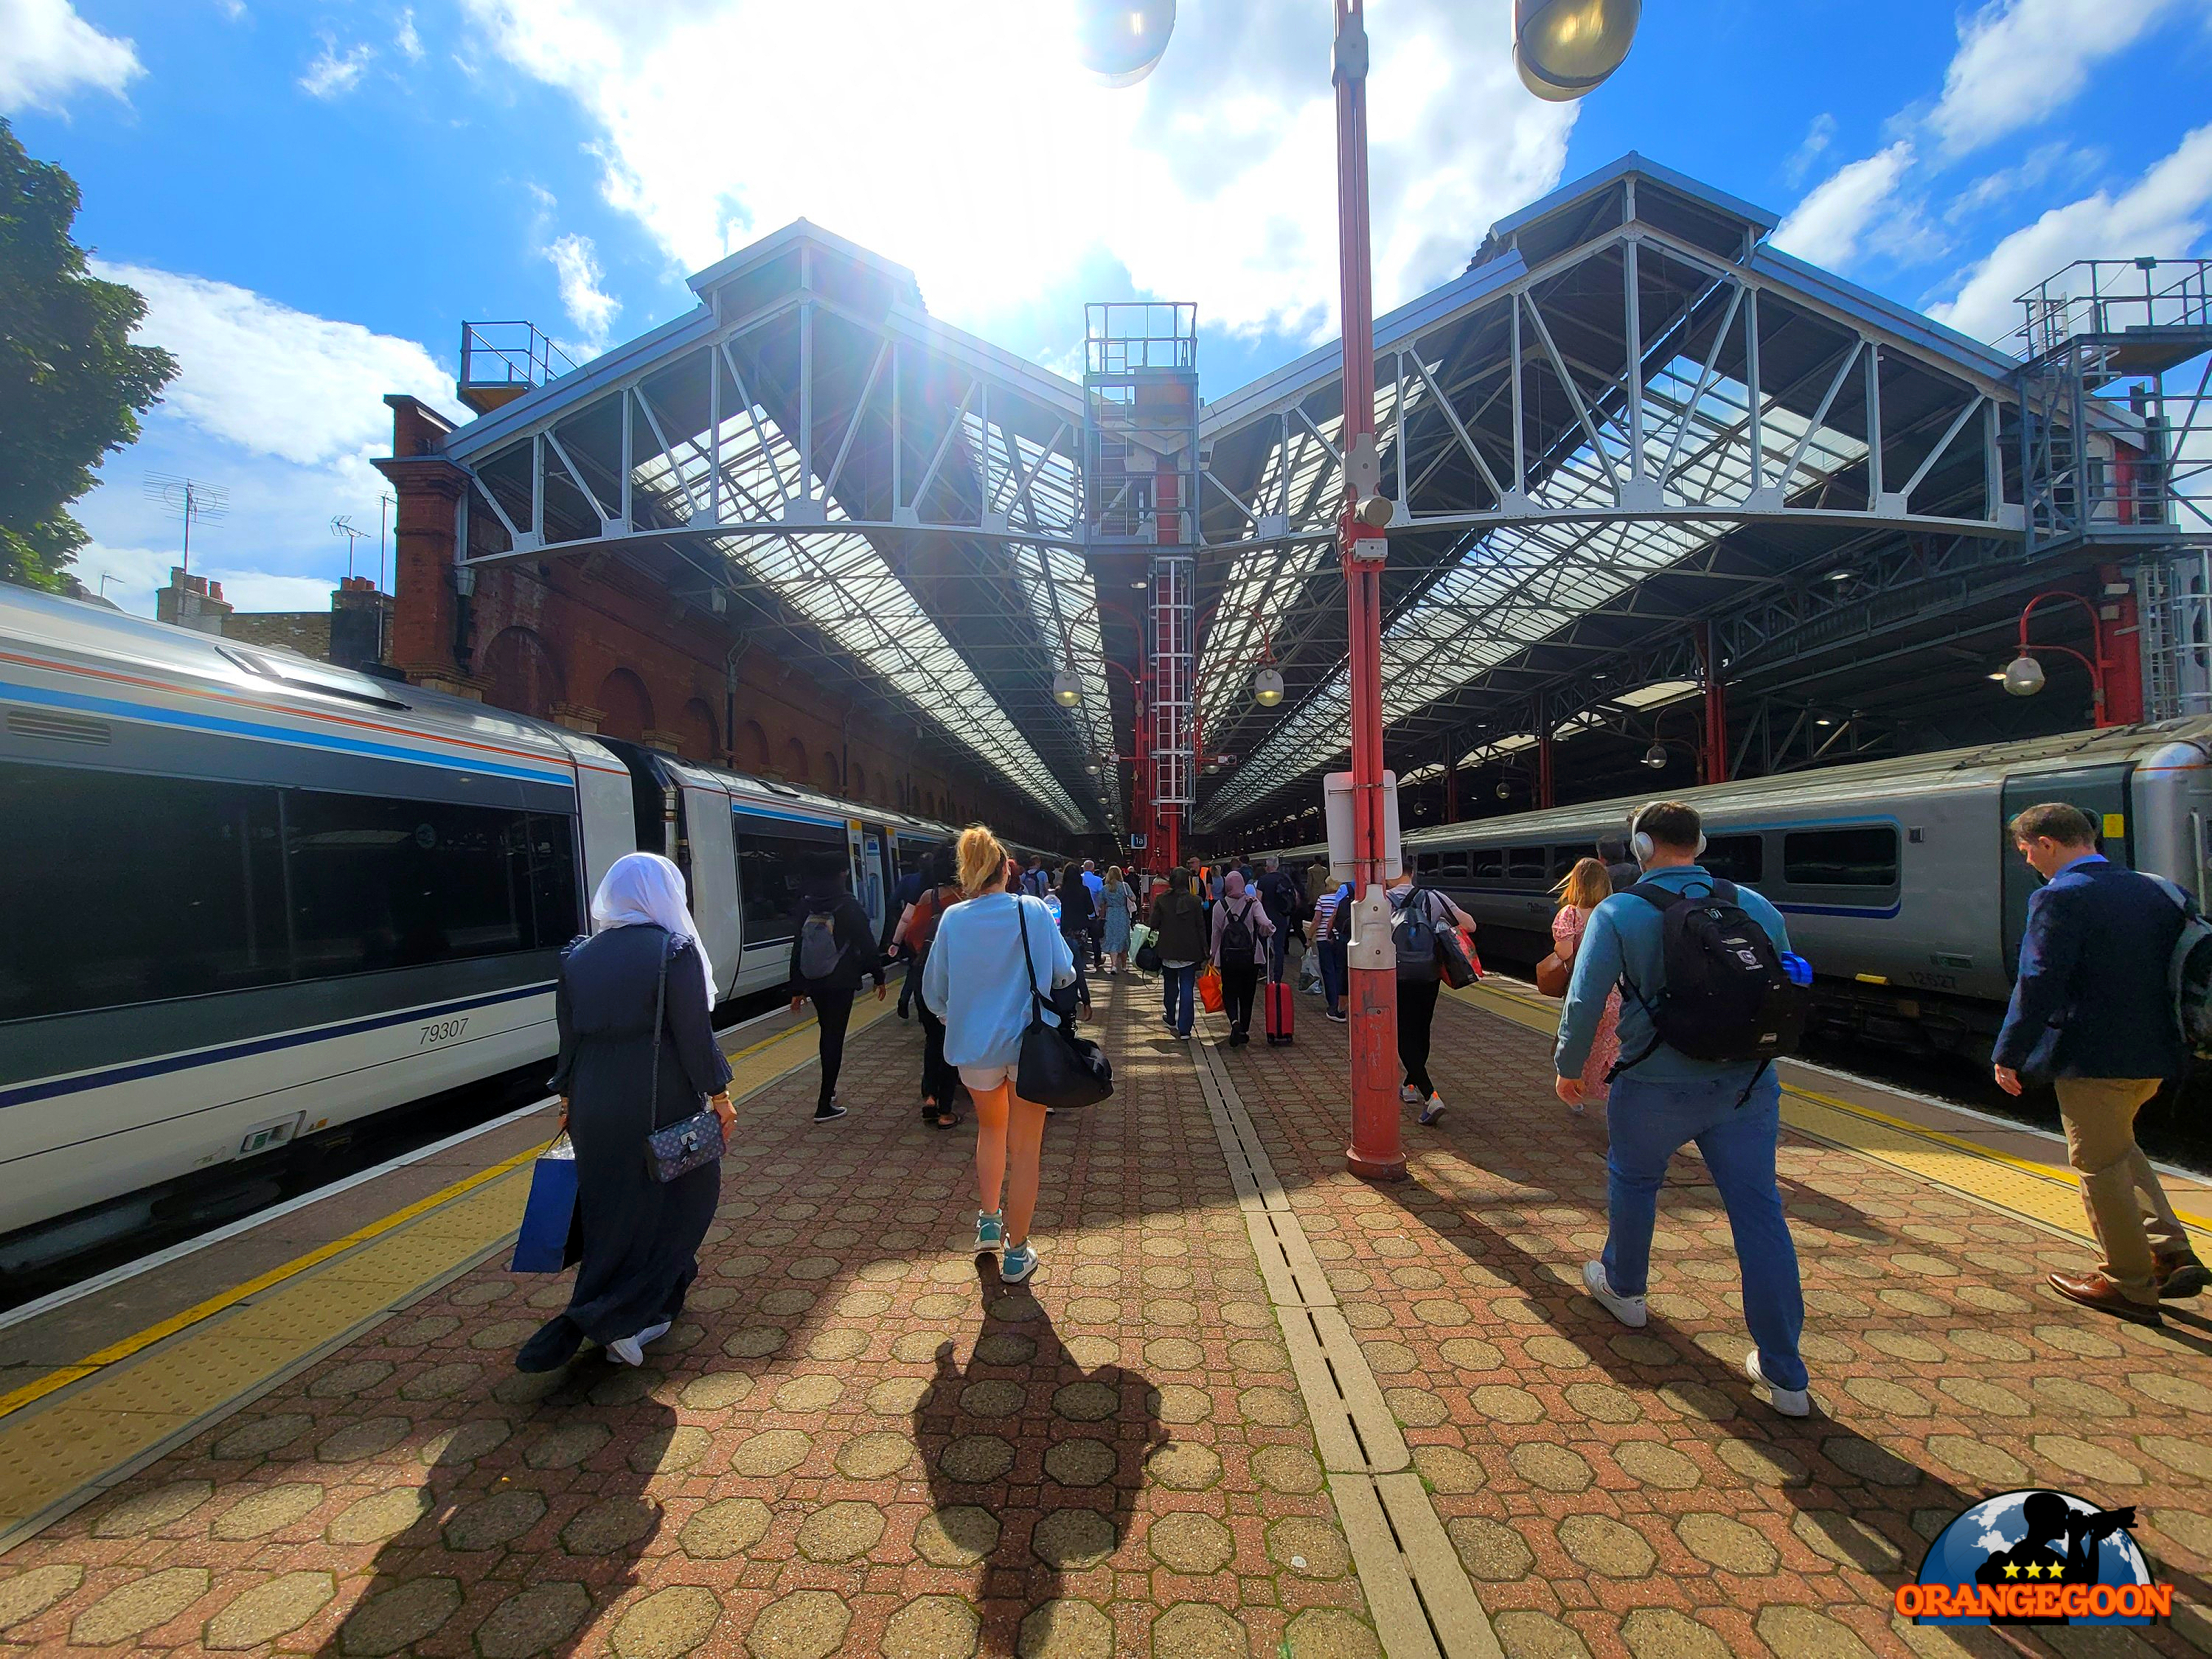 (영국 버밍엄 / 버밍엄 무어 스트리트역 #3) 버밍엄에서 가장 아름다운 기차역. 칠턴 레일웨이스의 기차가 달리는 역 Birmingham Moor Street Station